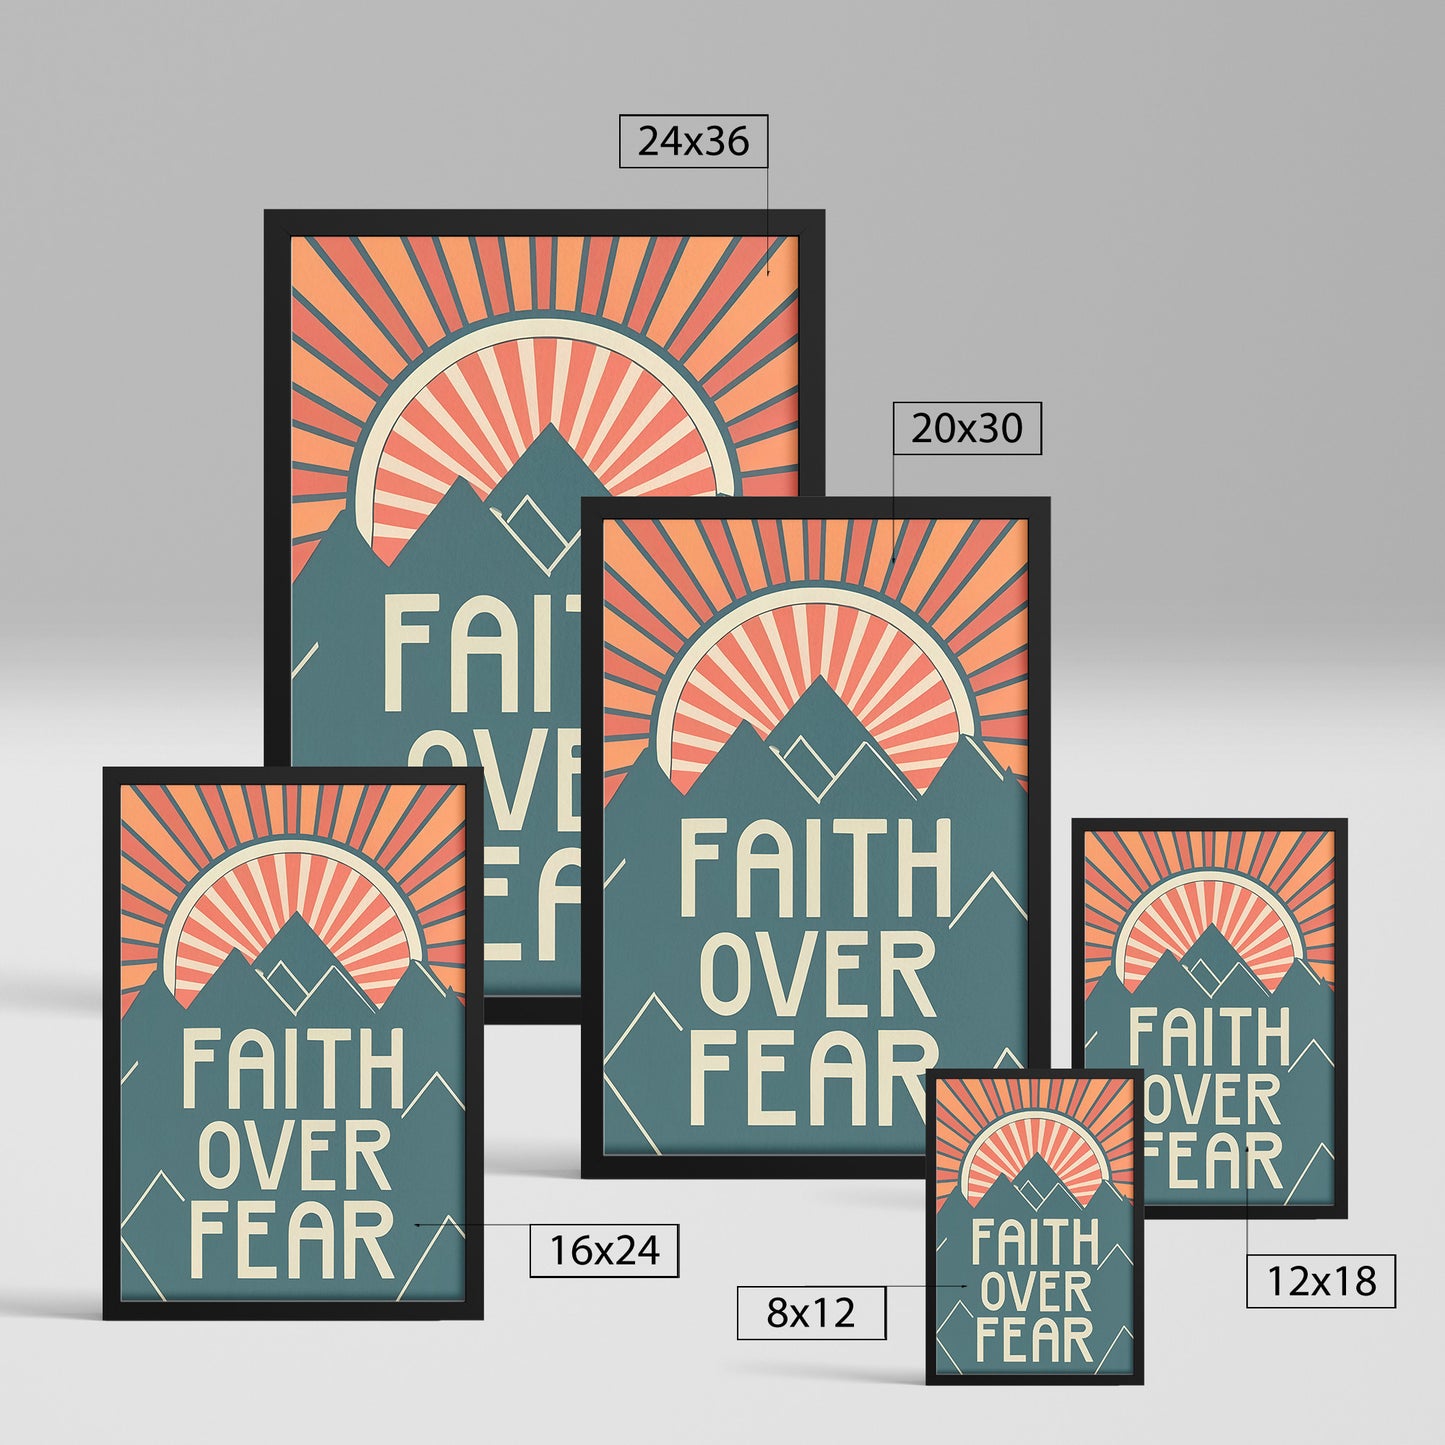 Faith Over Fear Retro Style Framed Print